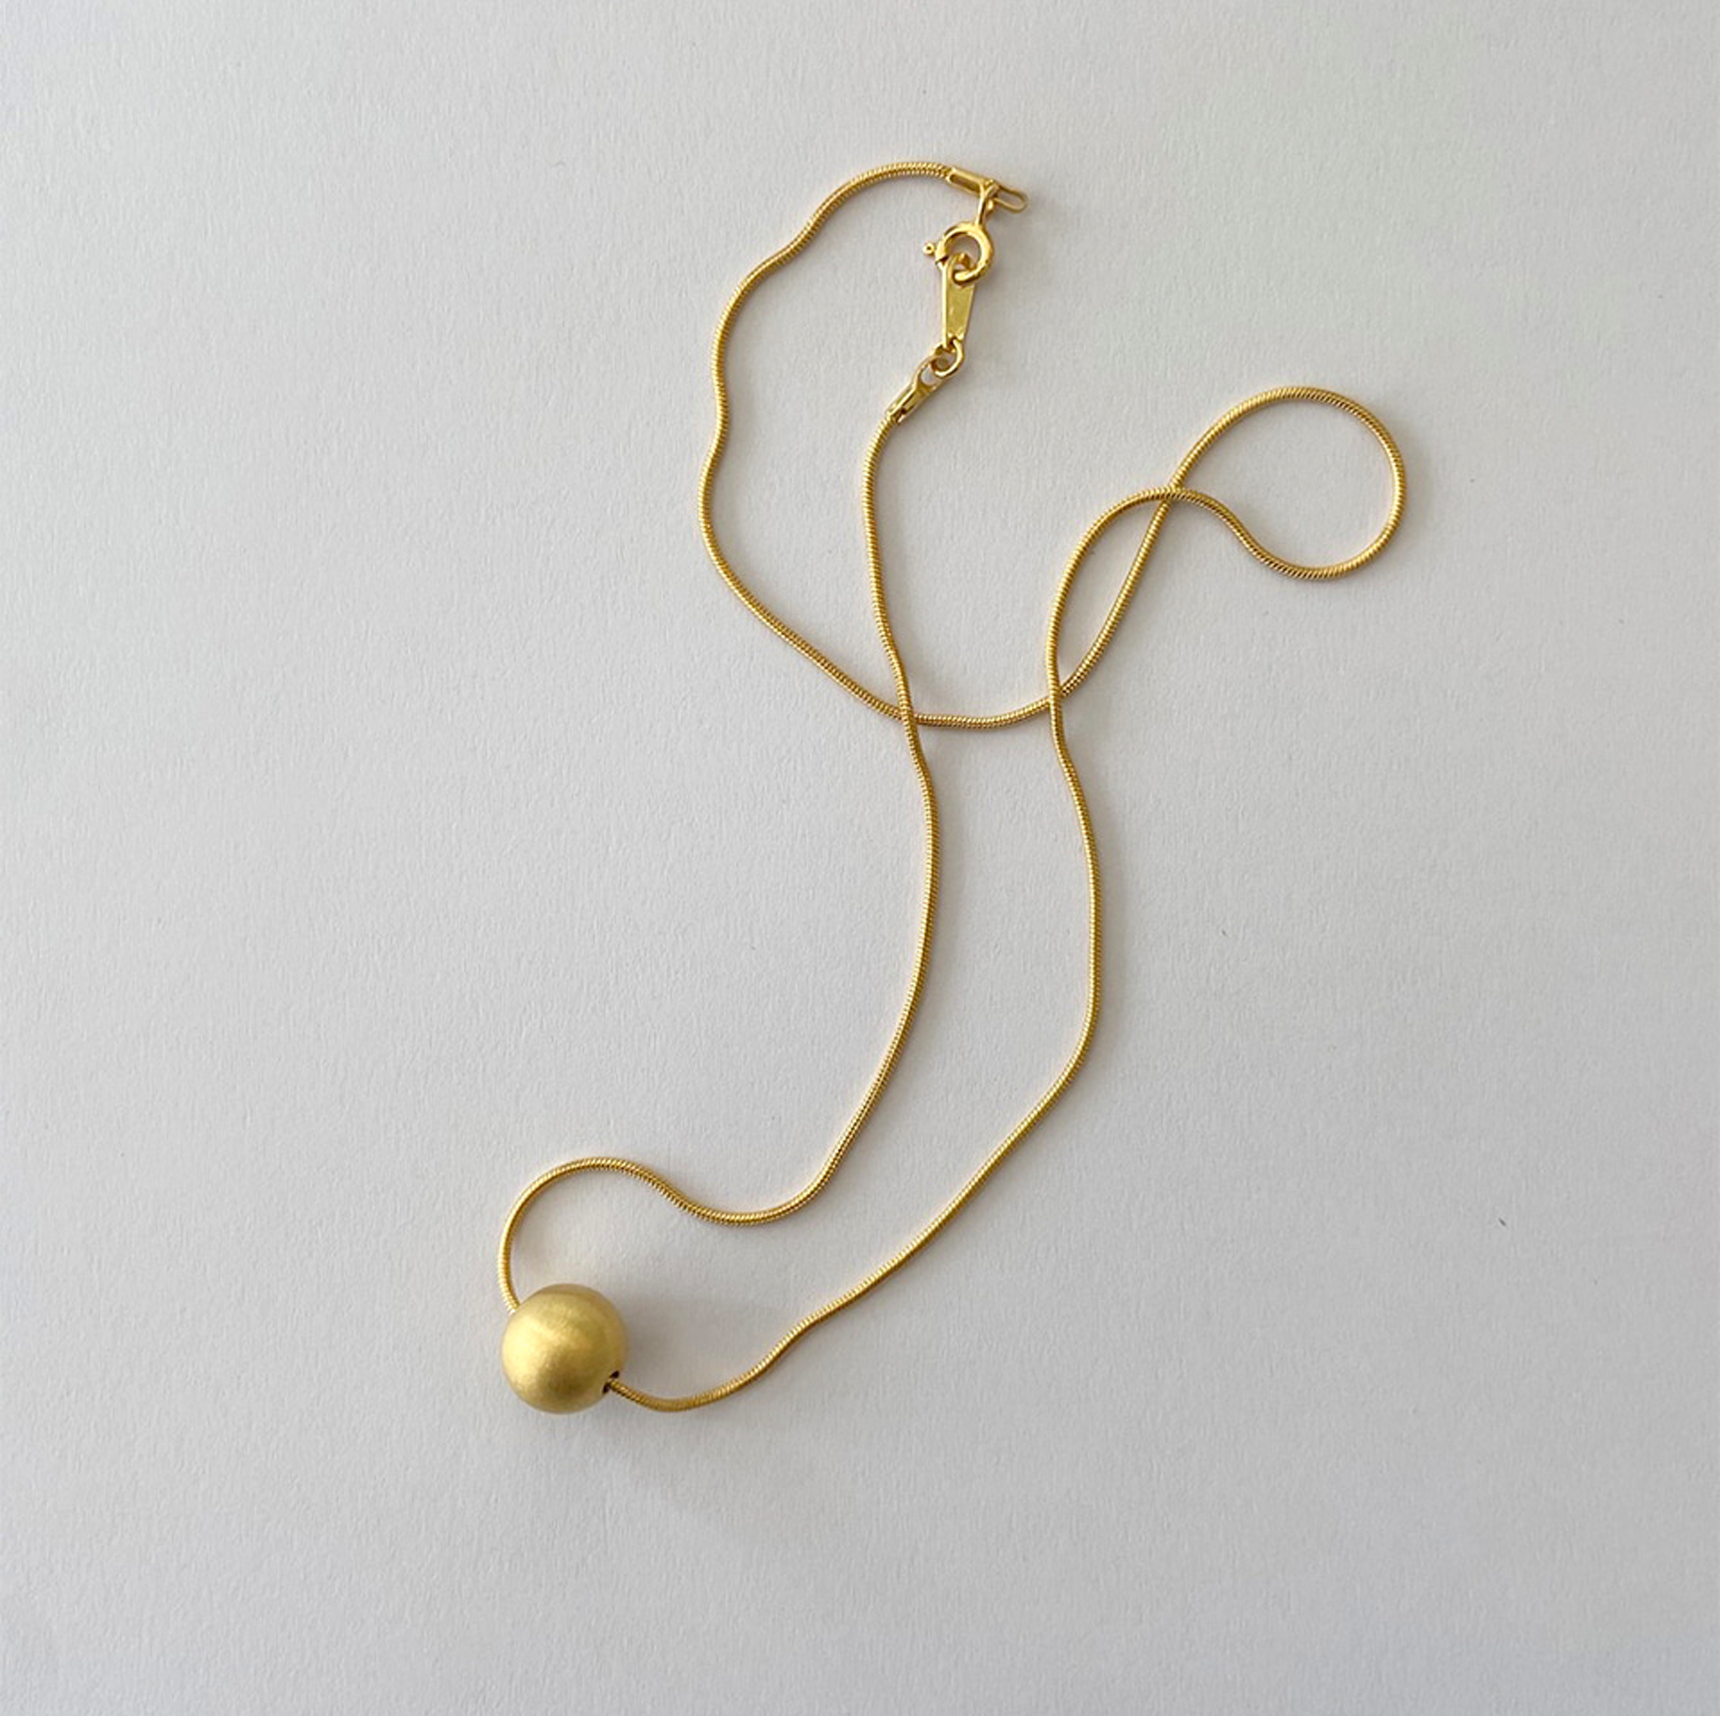 ボール スネーク ネックレス (マット ゴールド ボール) / Ball Snake Necklace (Matt Gold Ball)